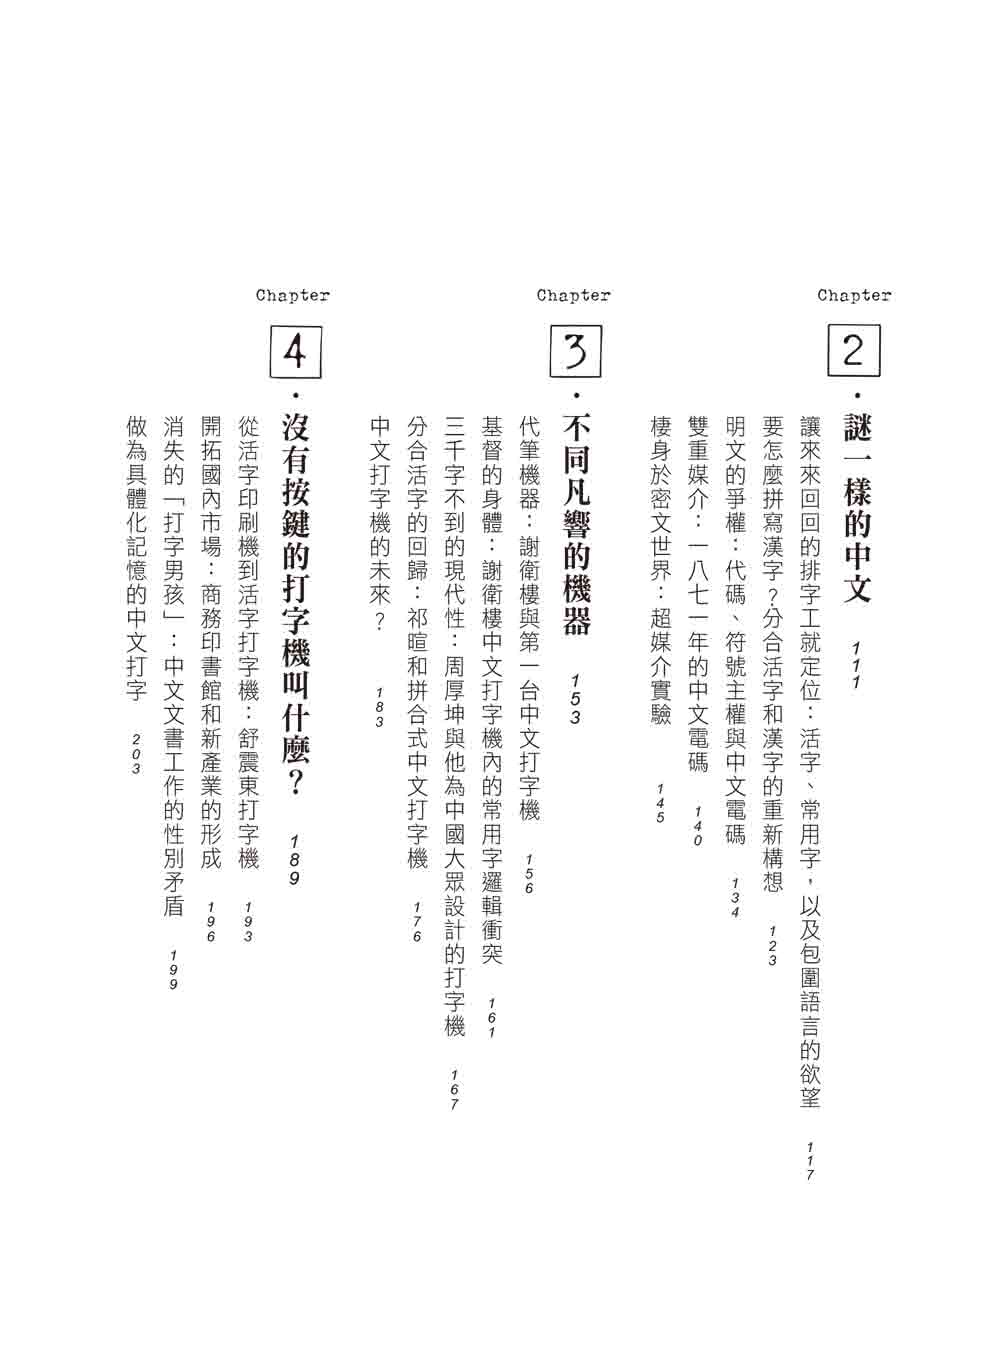 中文打字機：機械書寫時代的漢字輸入進化史